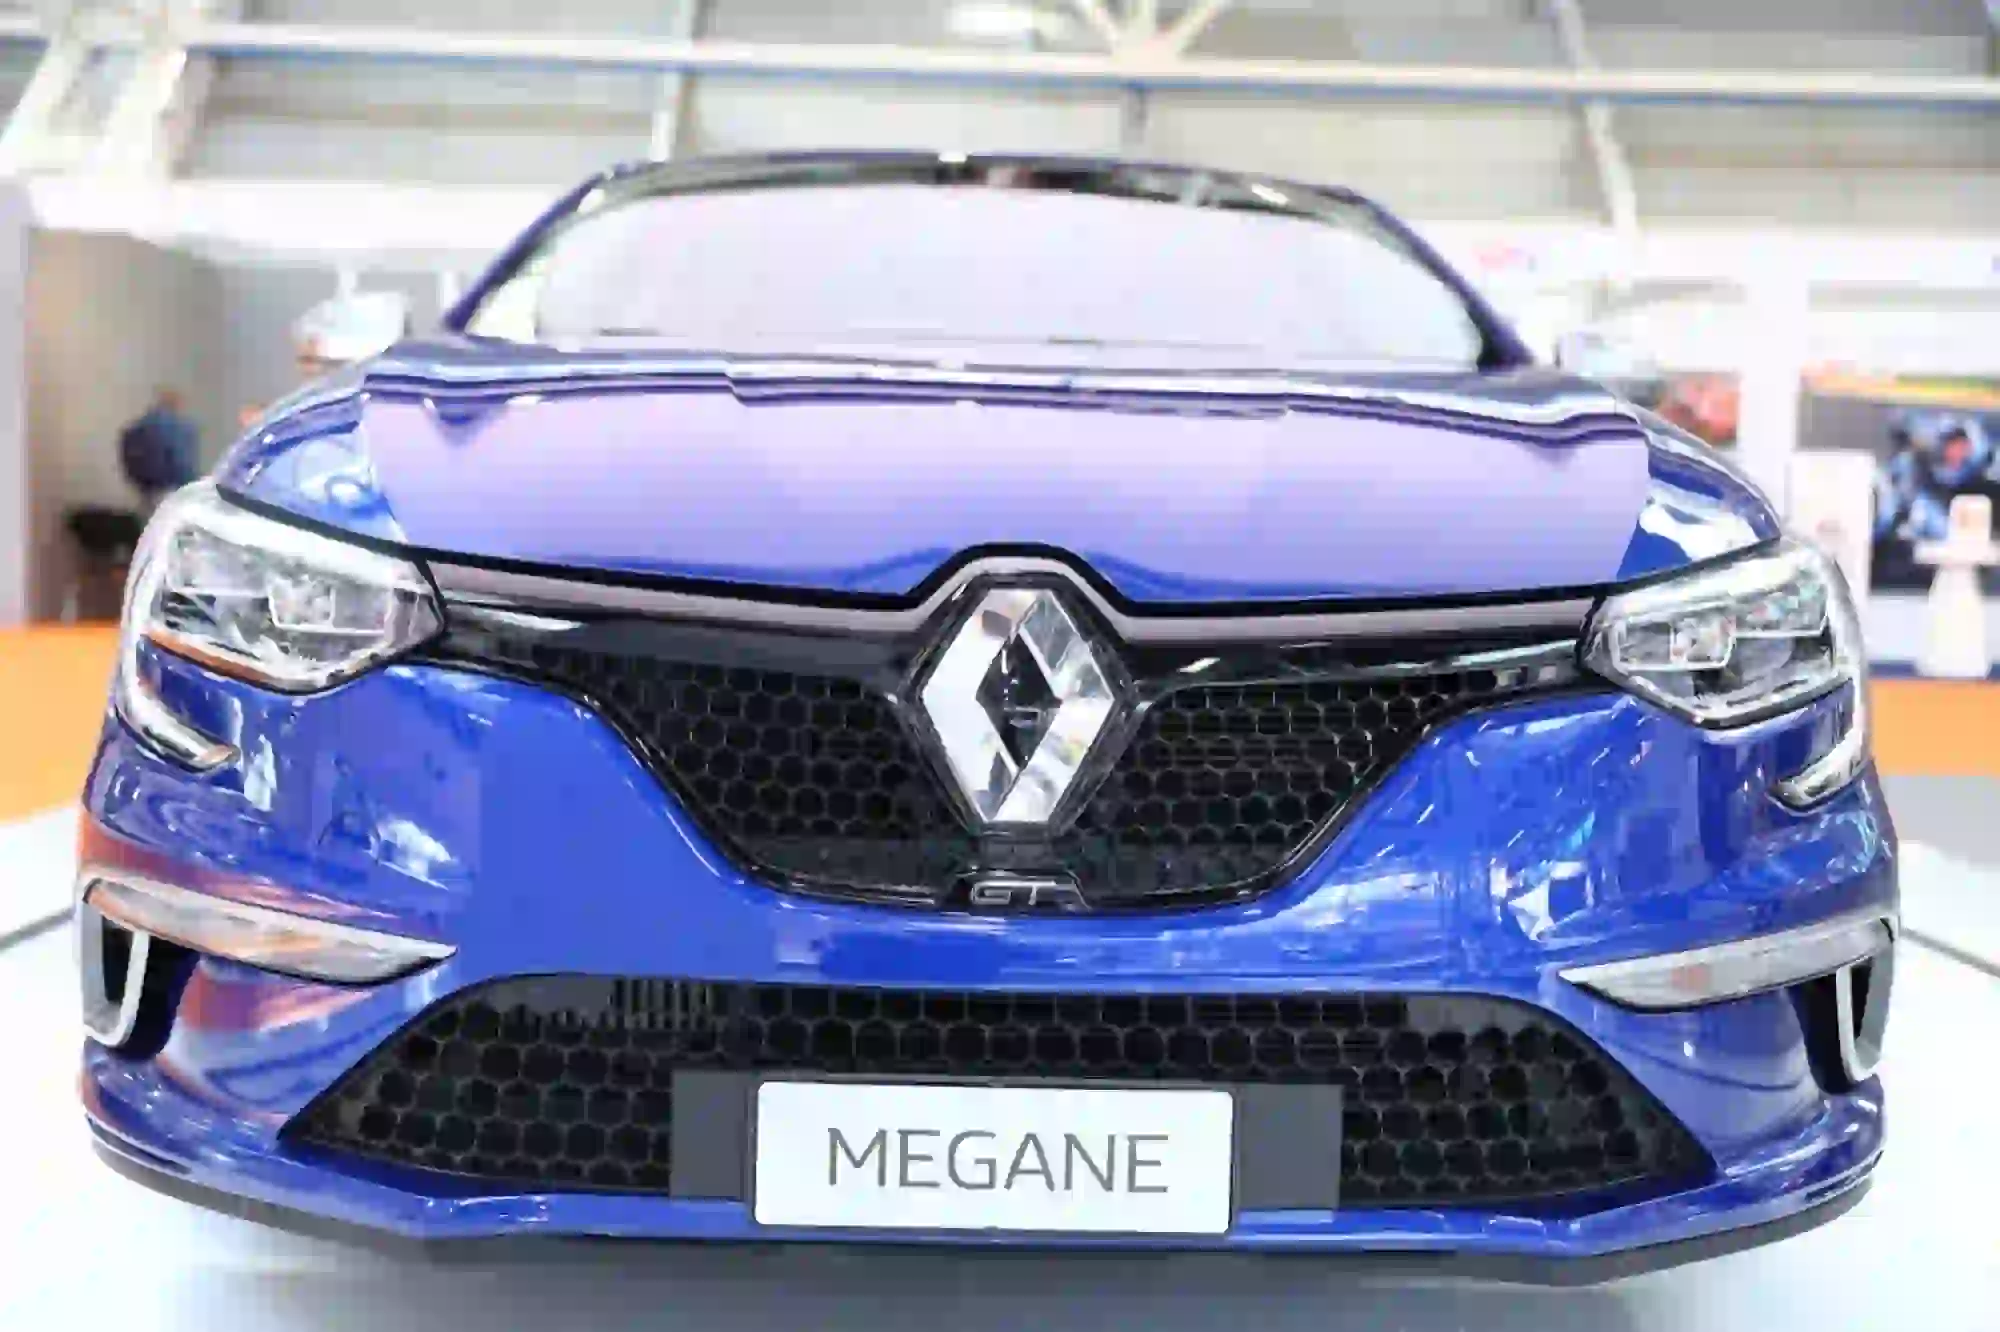 Renault al Motor Show di Bologna 2016 - 11